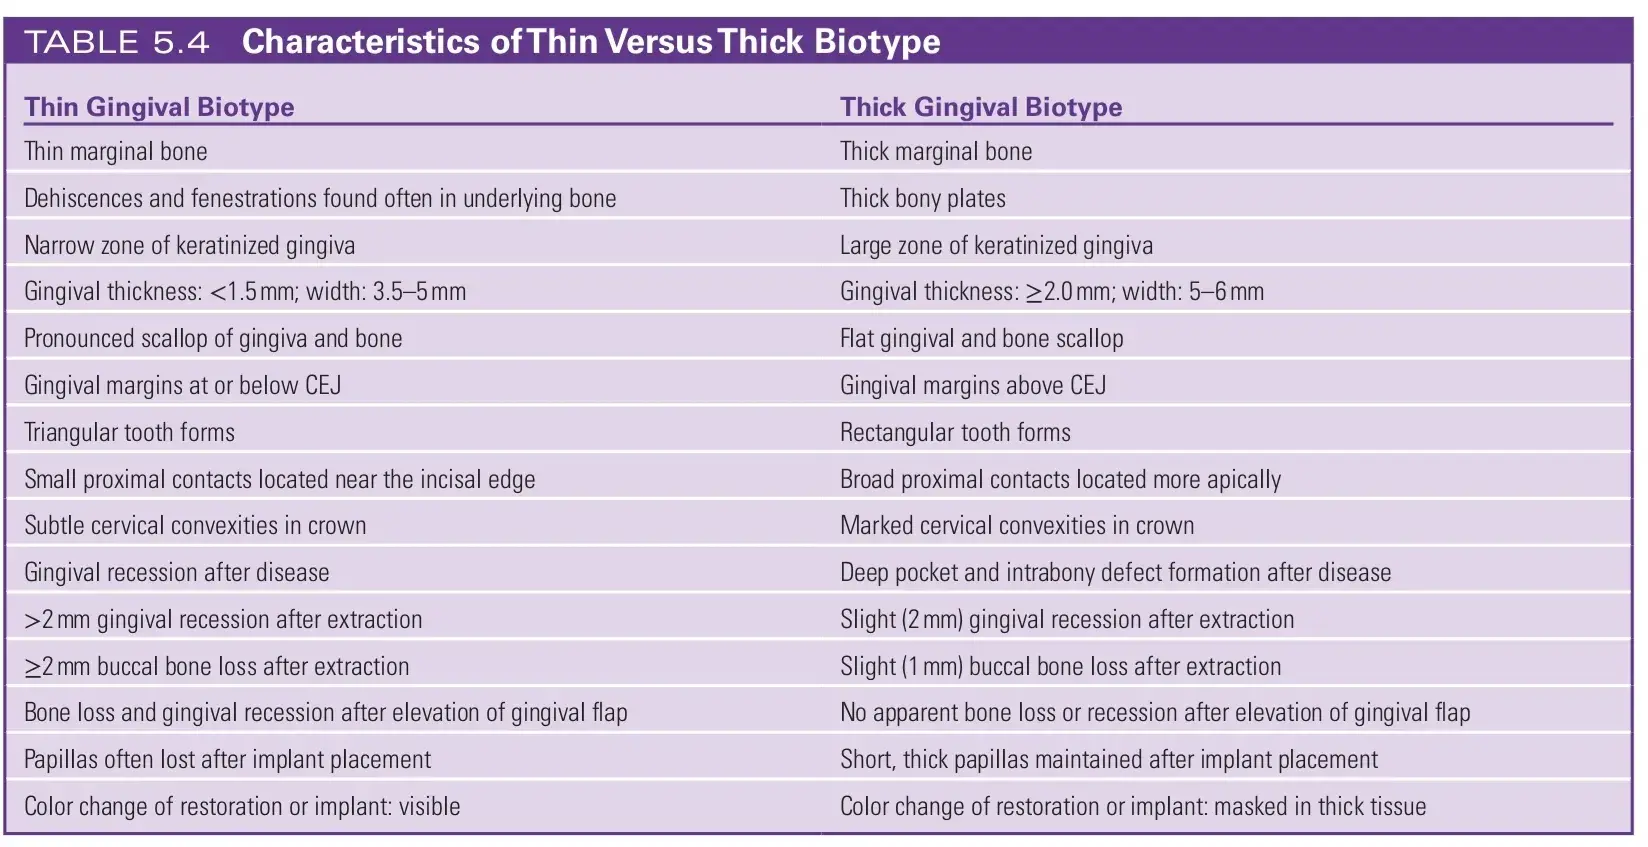 Characteristics of thin versus thick biotype